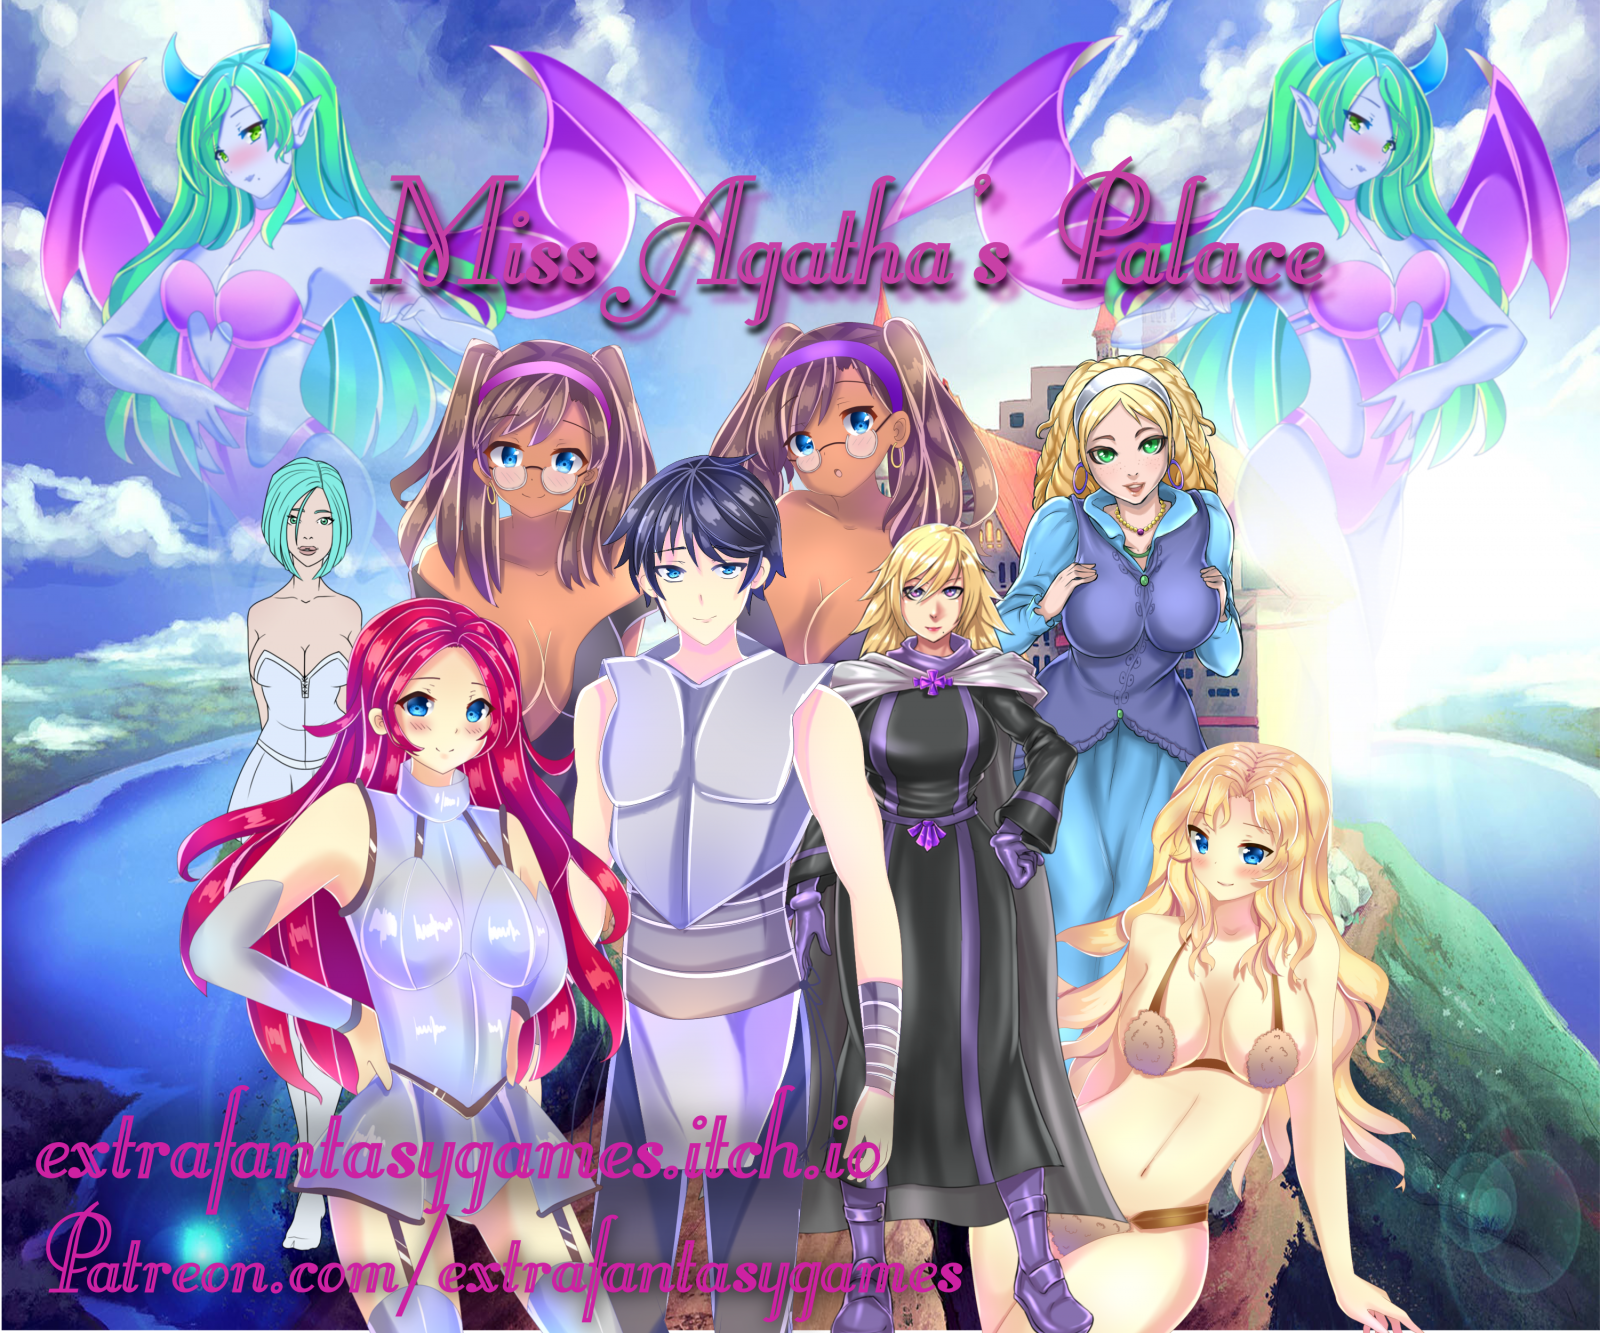 ExtraFantasyGames - Miss Agatha’s Palace Ver.1.4 (eng)